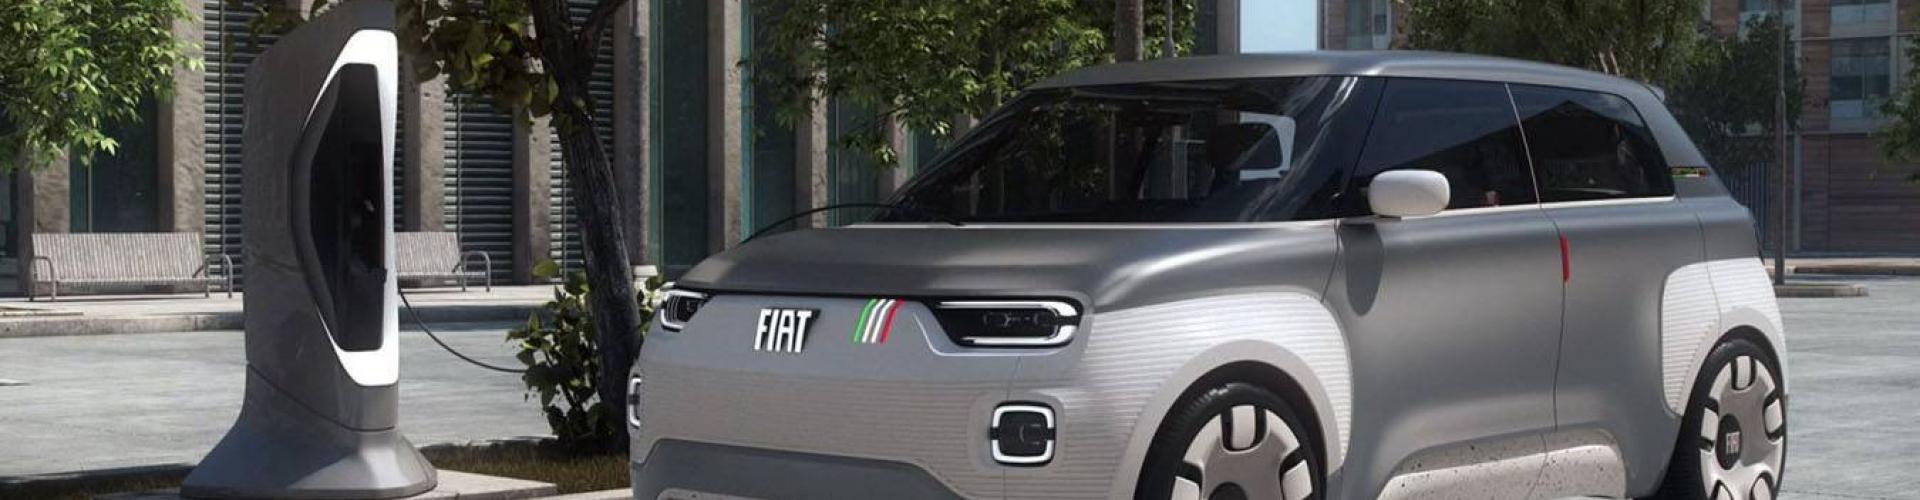 FIAT CENTOVENTO VINCE IL PREMIO  CAR DESIGN AWARDS 2019: Immagine